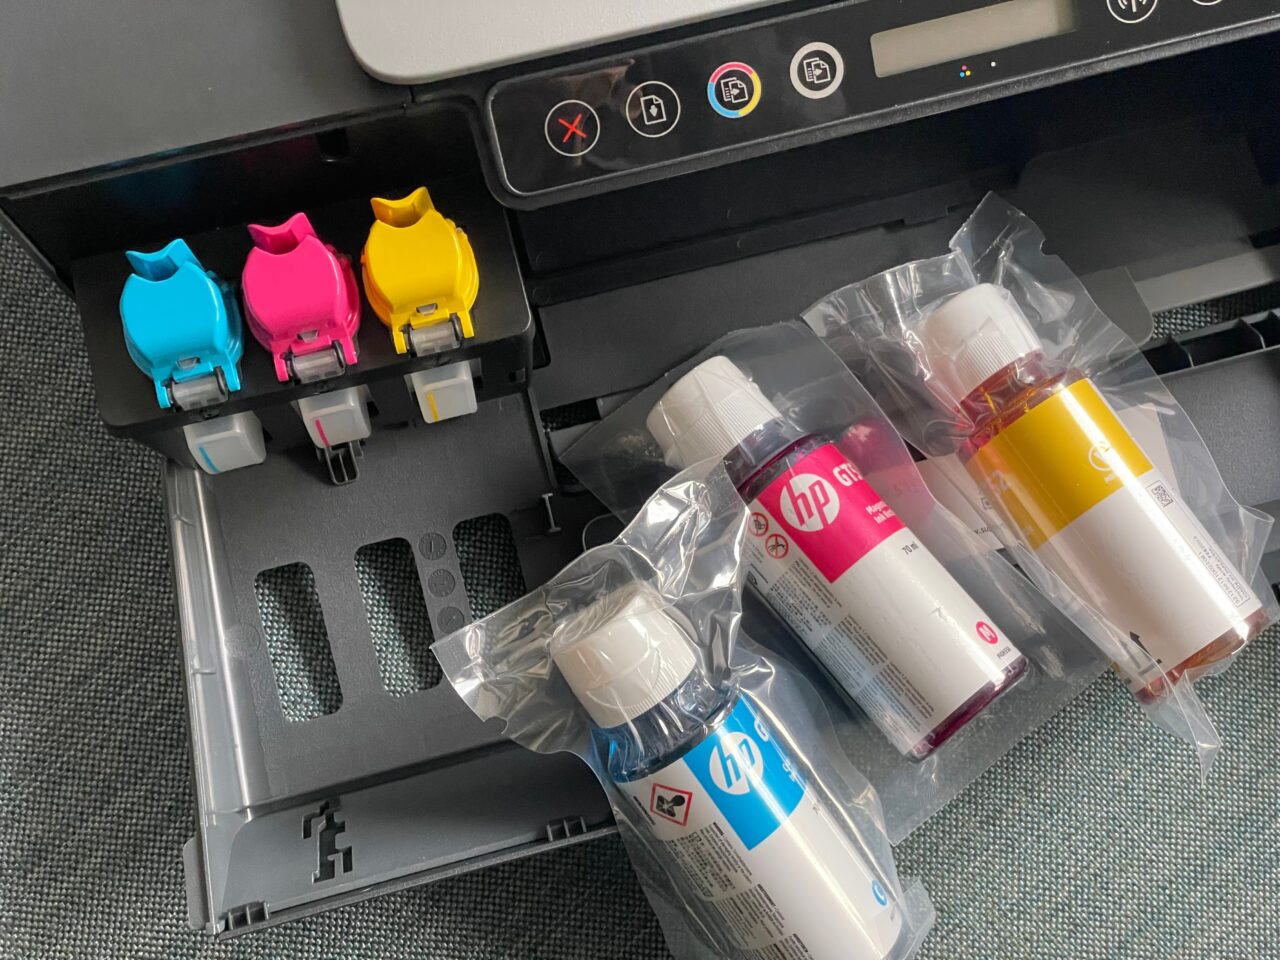 Kolorowa drukarka z otwartym przedziałem na wkłady atramentowe i czterema butelkami z atramentem w kolorach niebieskim, różowym, żółtym i czarnym leżącymi obok na blacie.